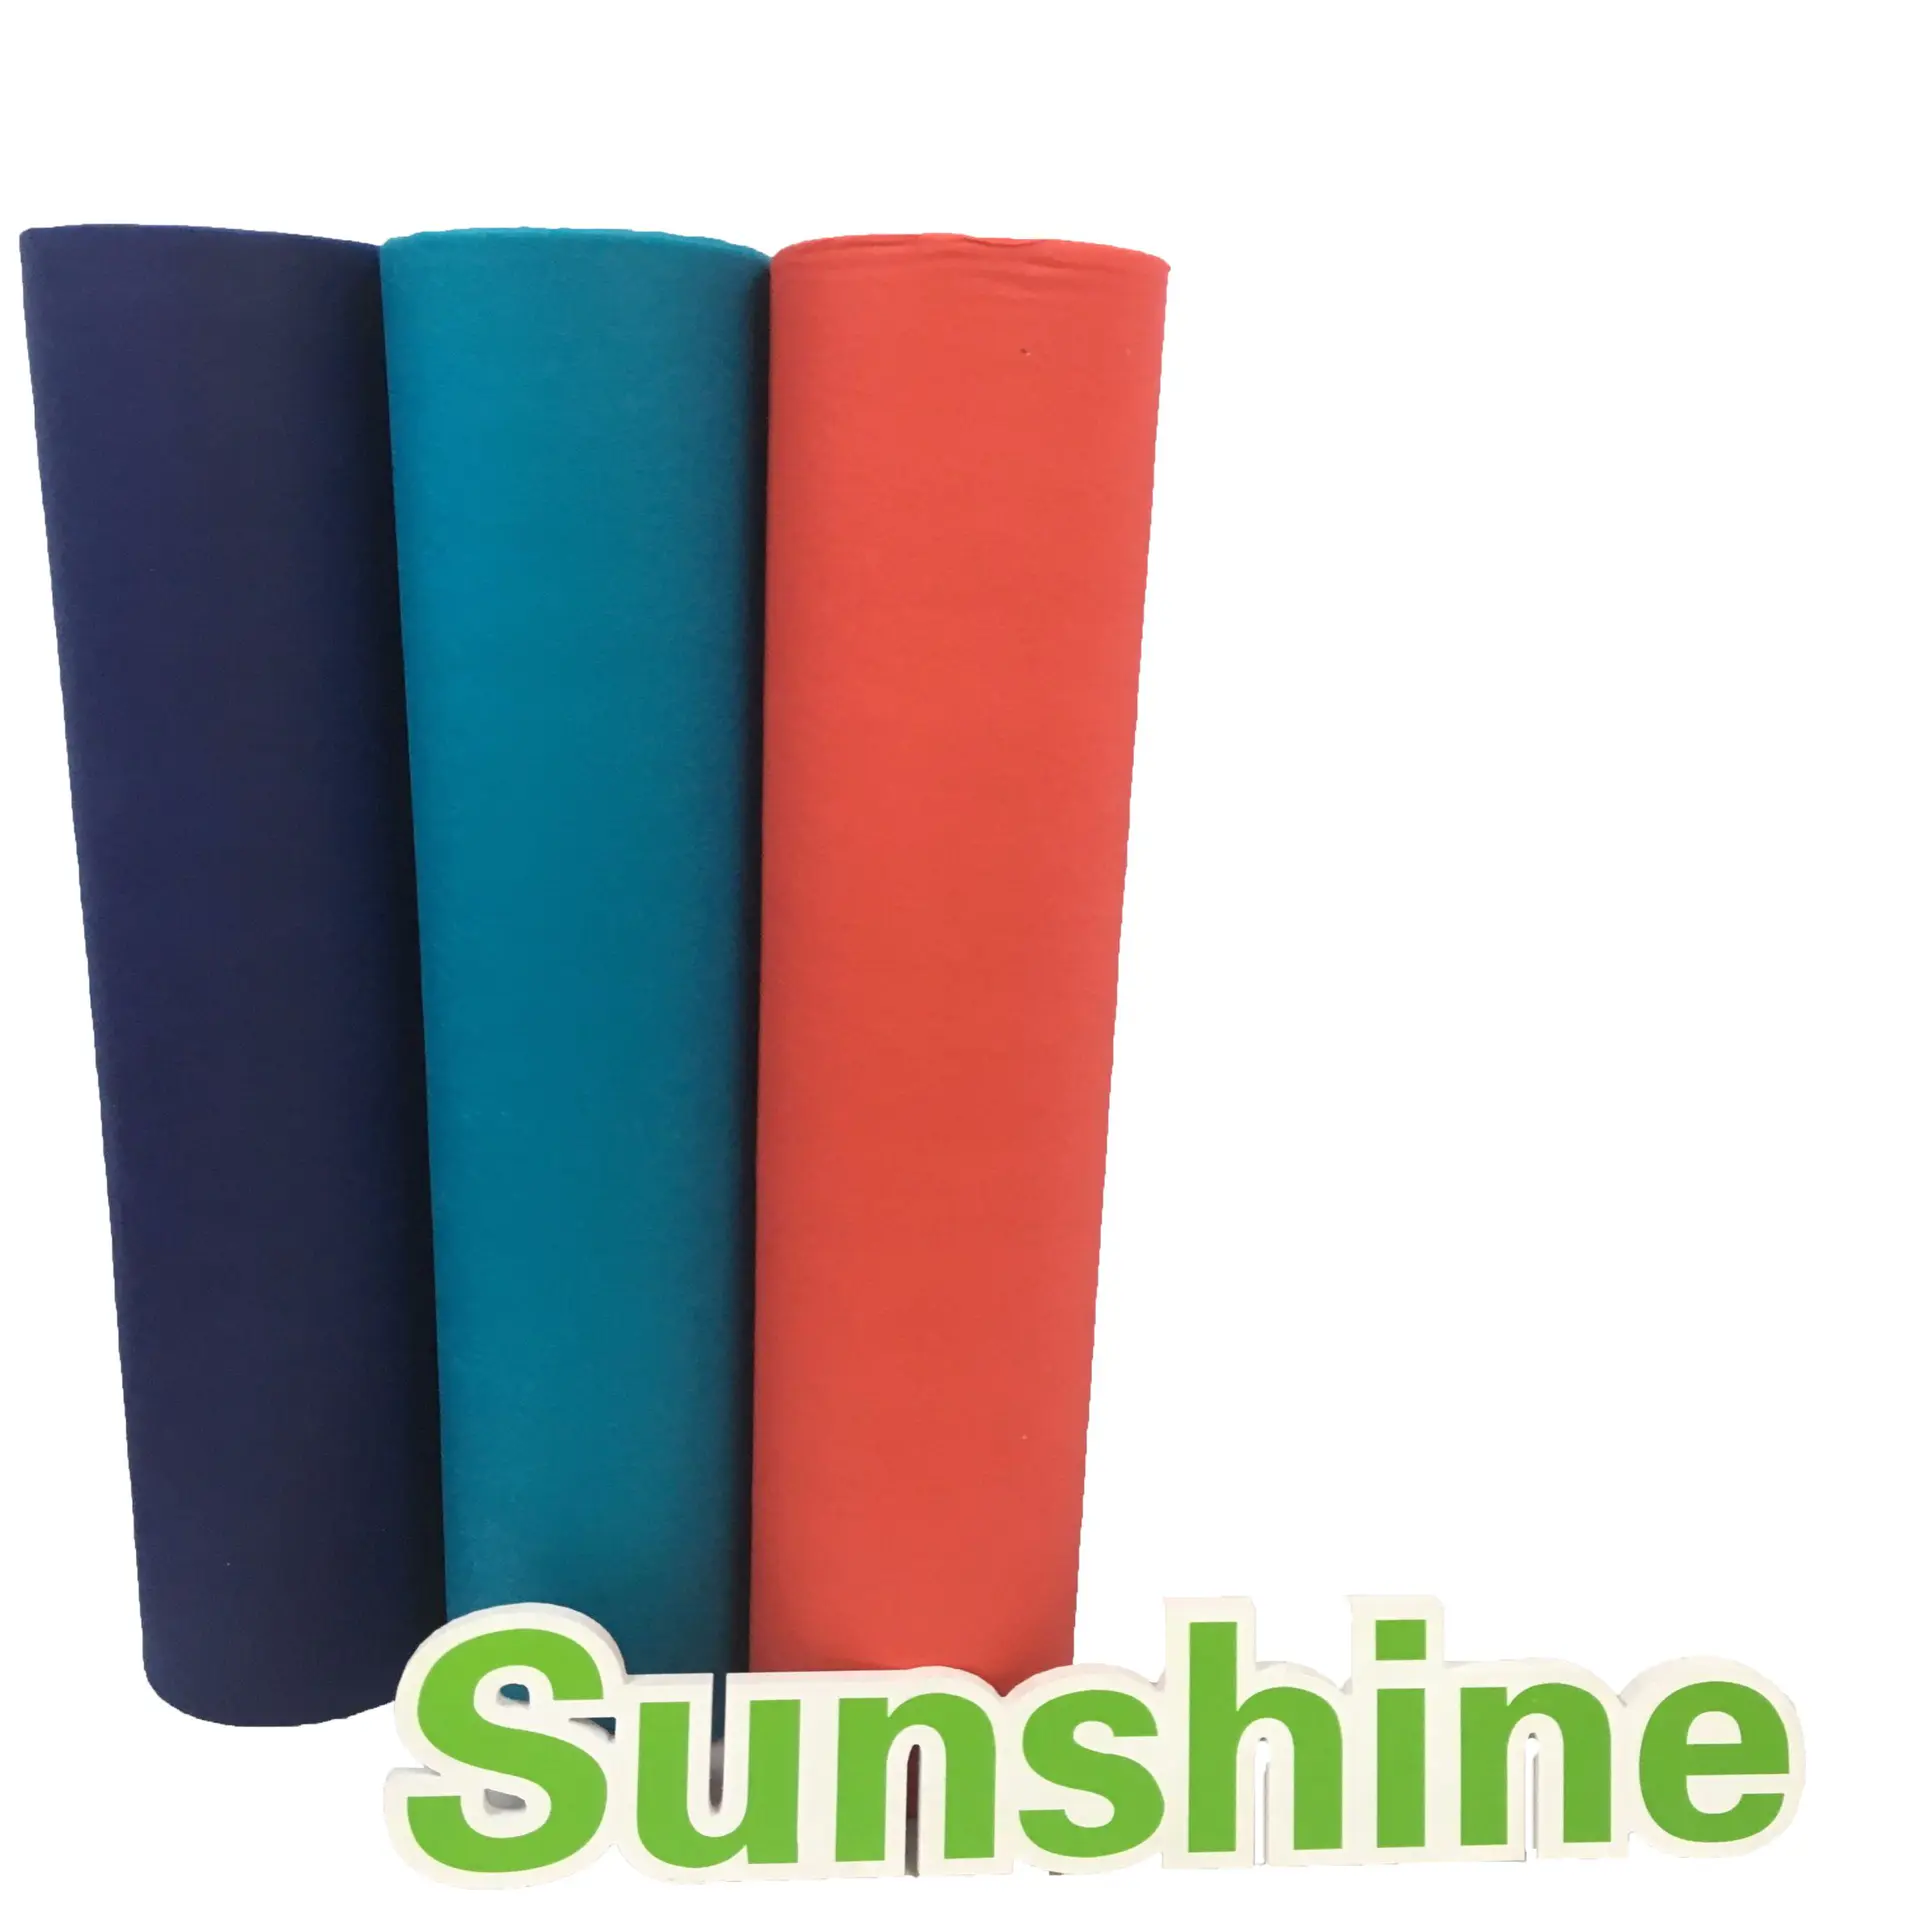 Polypropylene Spun Bonded Non Woven Fabric in Roll